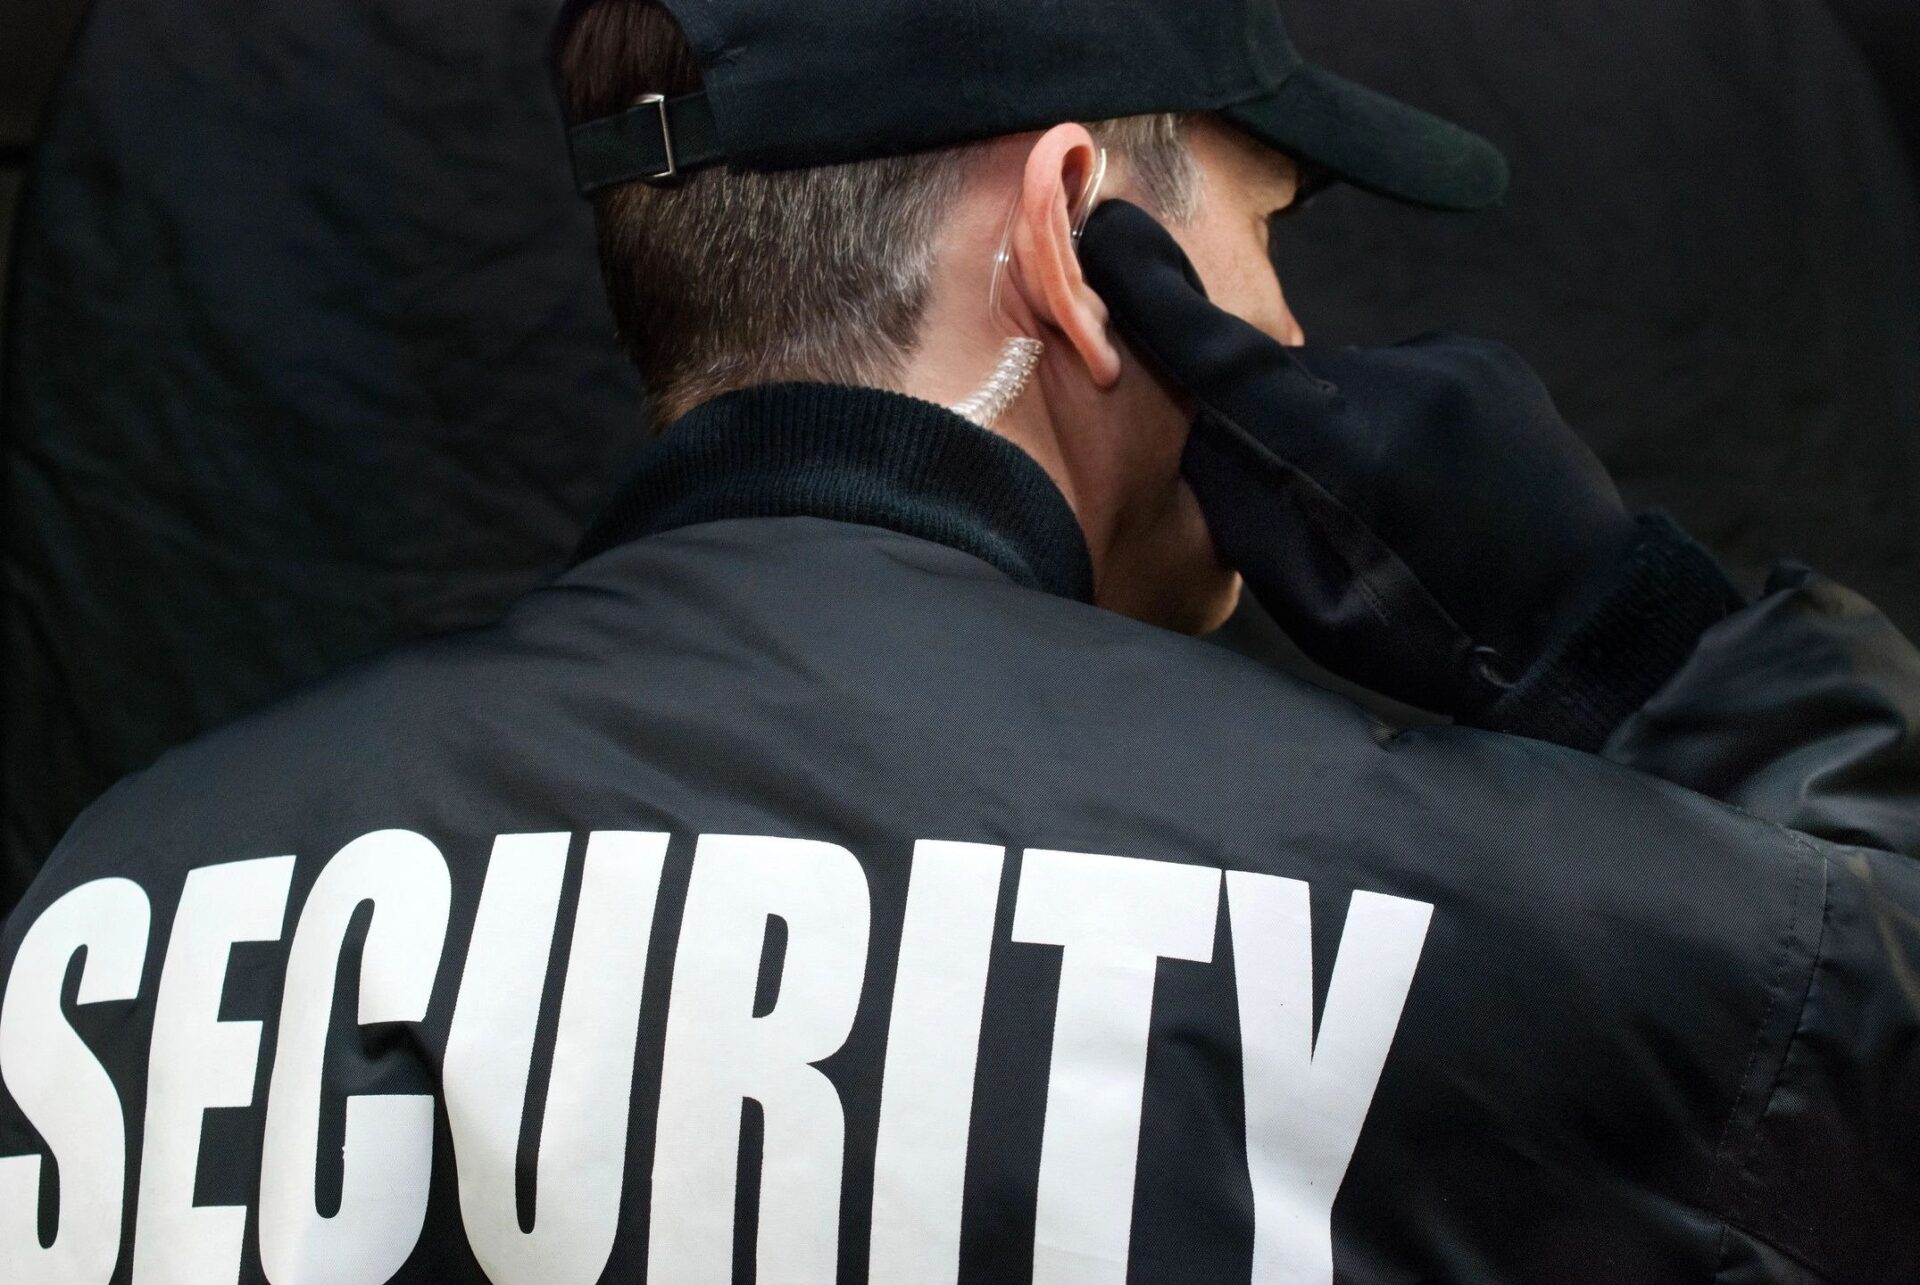 المهارات اللازمة لتوظيف حارس الأمن